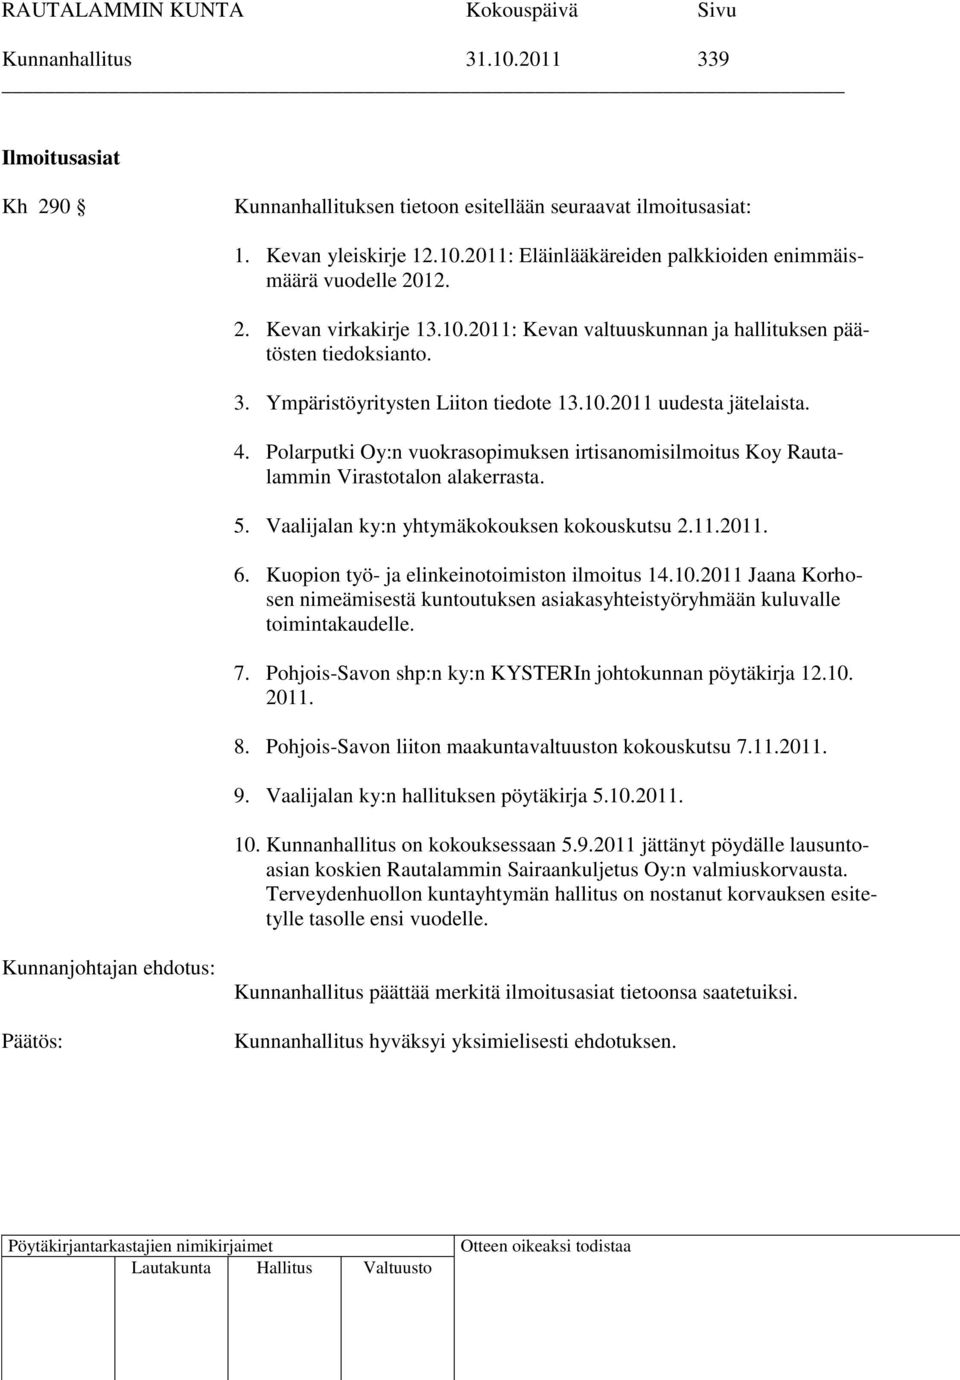 Polarputki Oy:n vuokrasopimuksen irtisanomisilmoitus Koy Rautalammin Virastotalon alakerrasta. 5. Vaalijalan ky:n yhtymäkokouksen kokouskutsu 2.11.2011. 6.